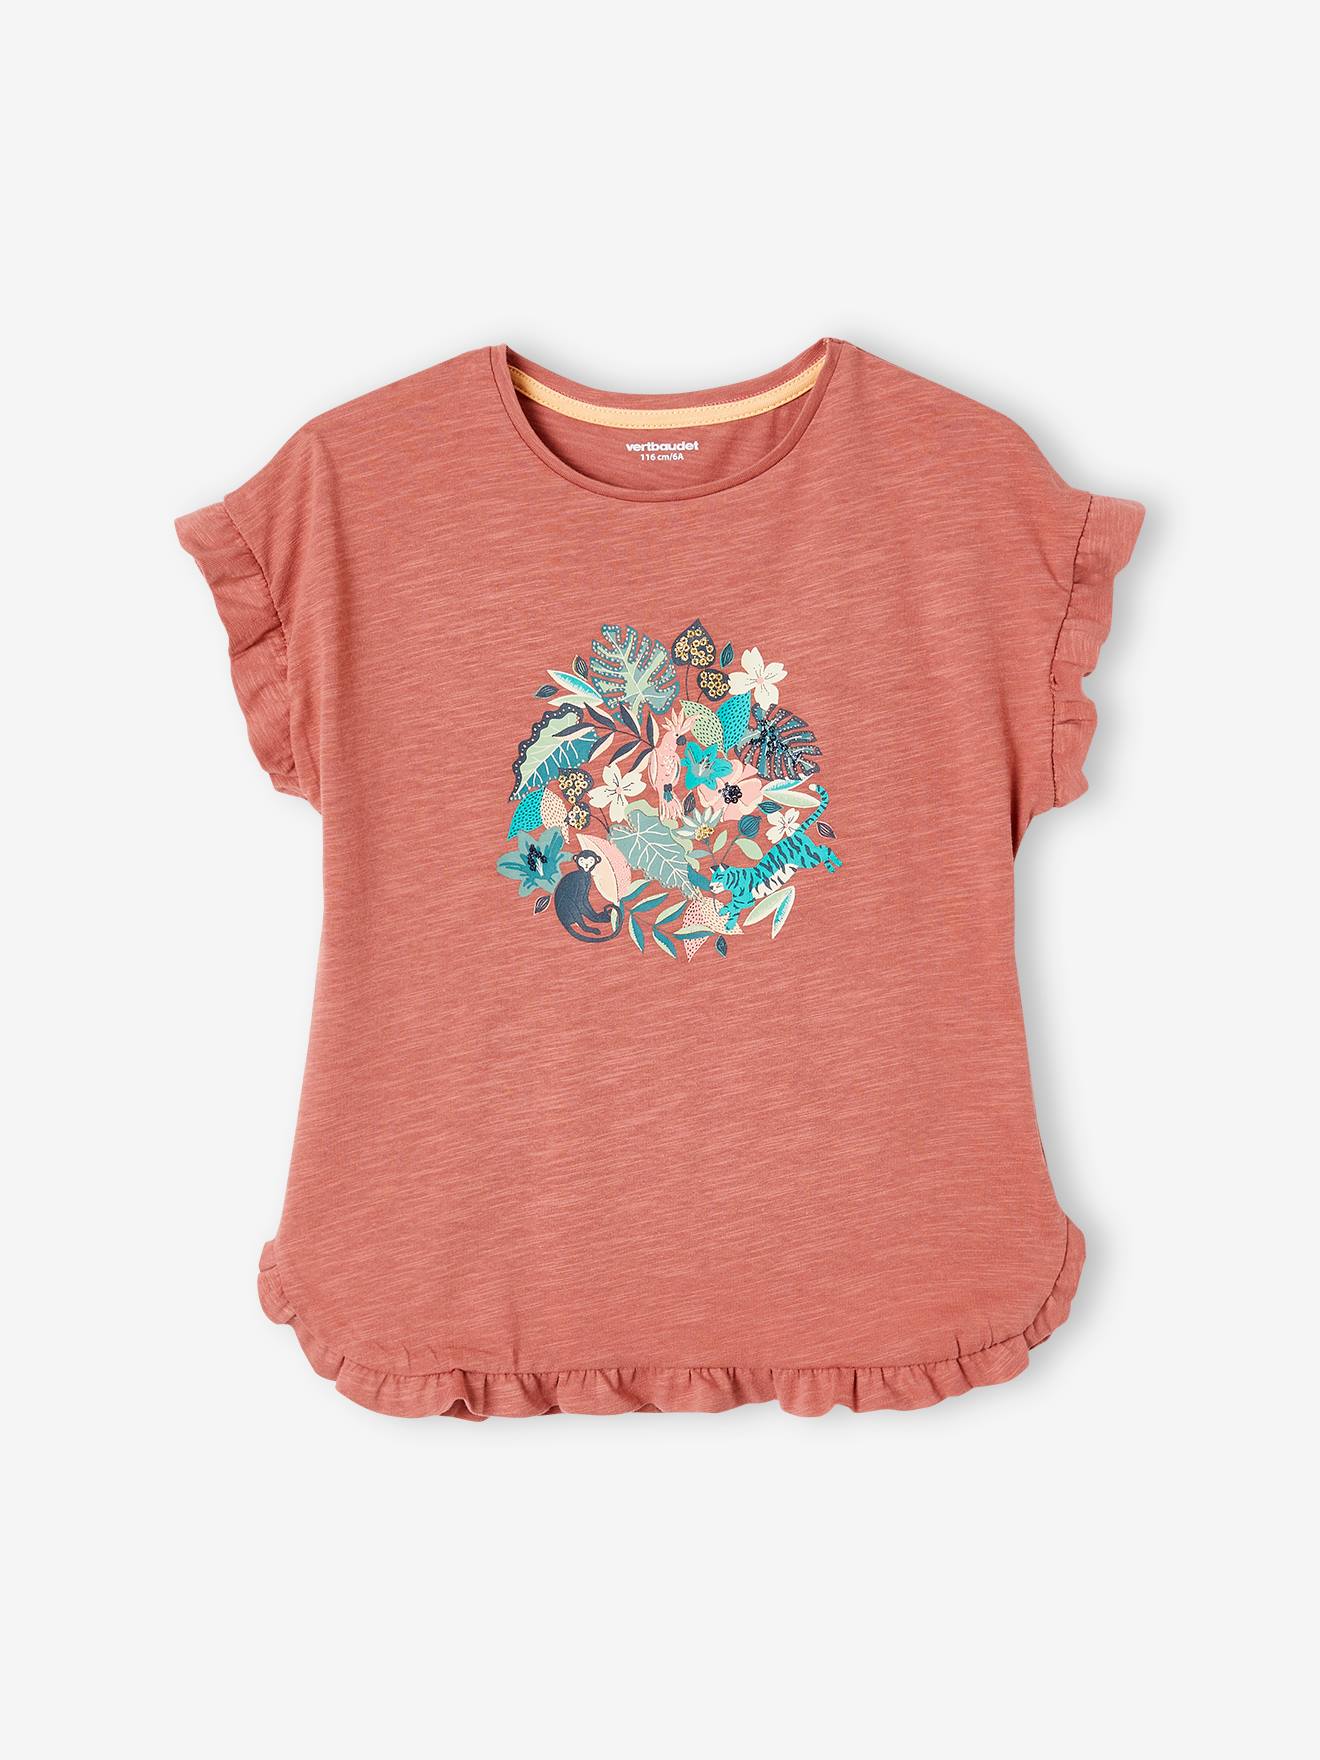 Camiseta estampada con lazo fantasía, para niña caqui - Vertbaudet